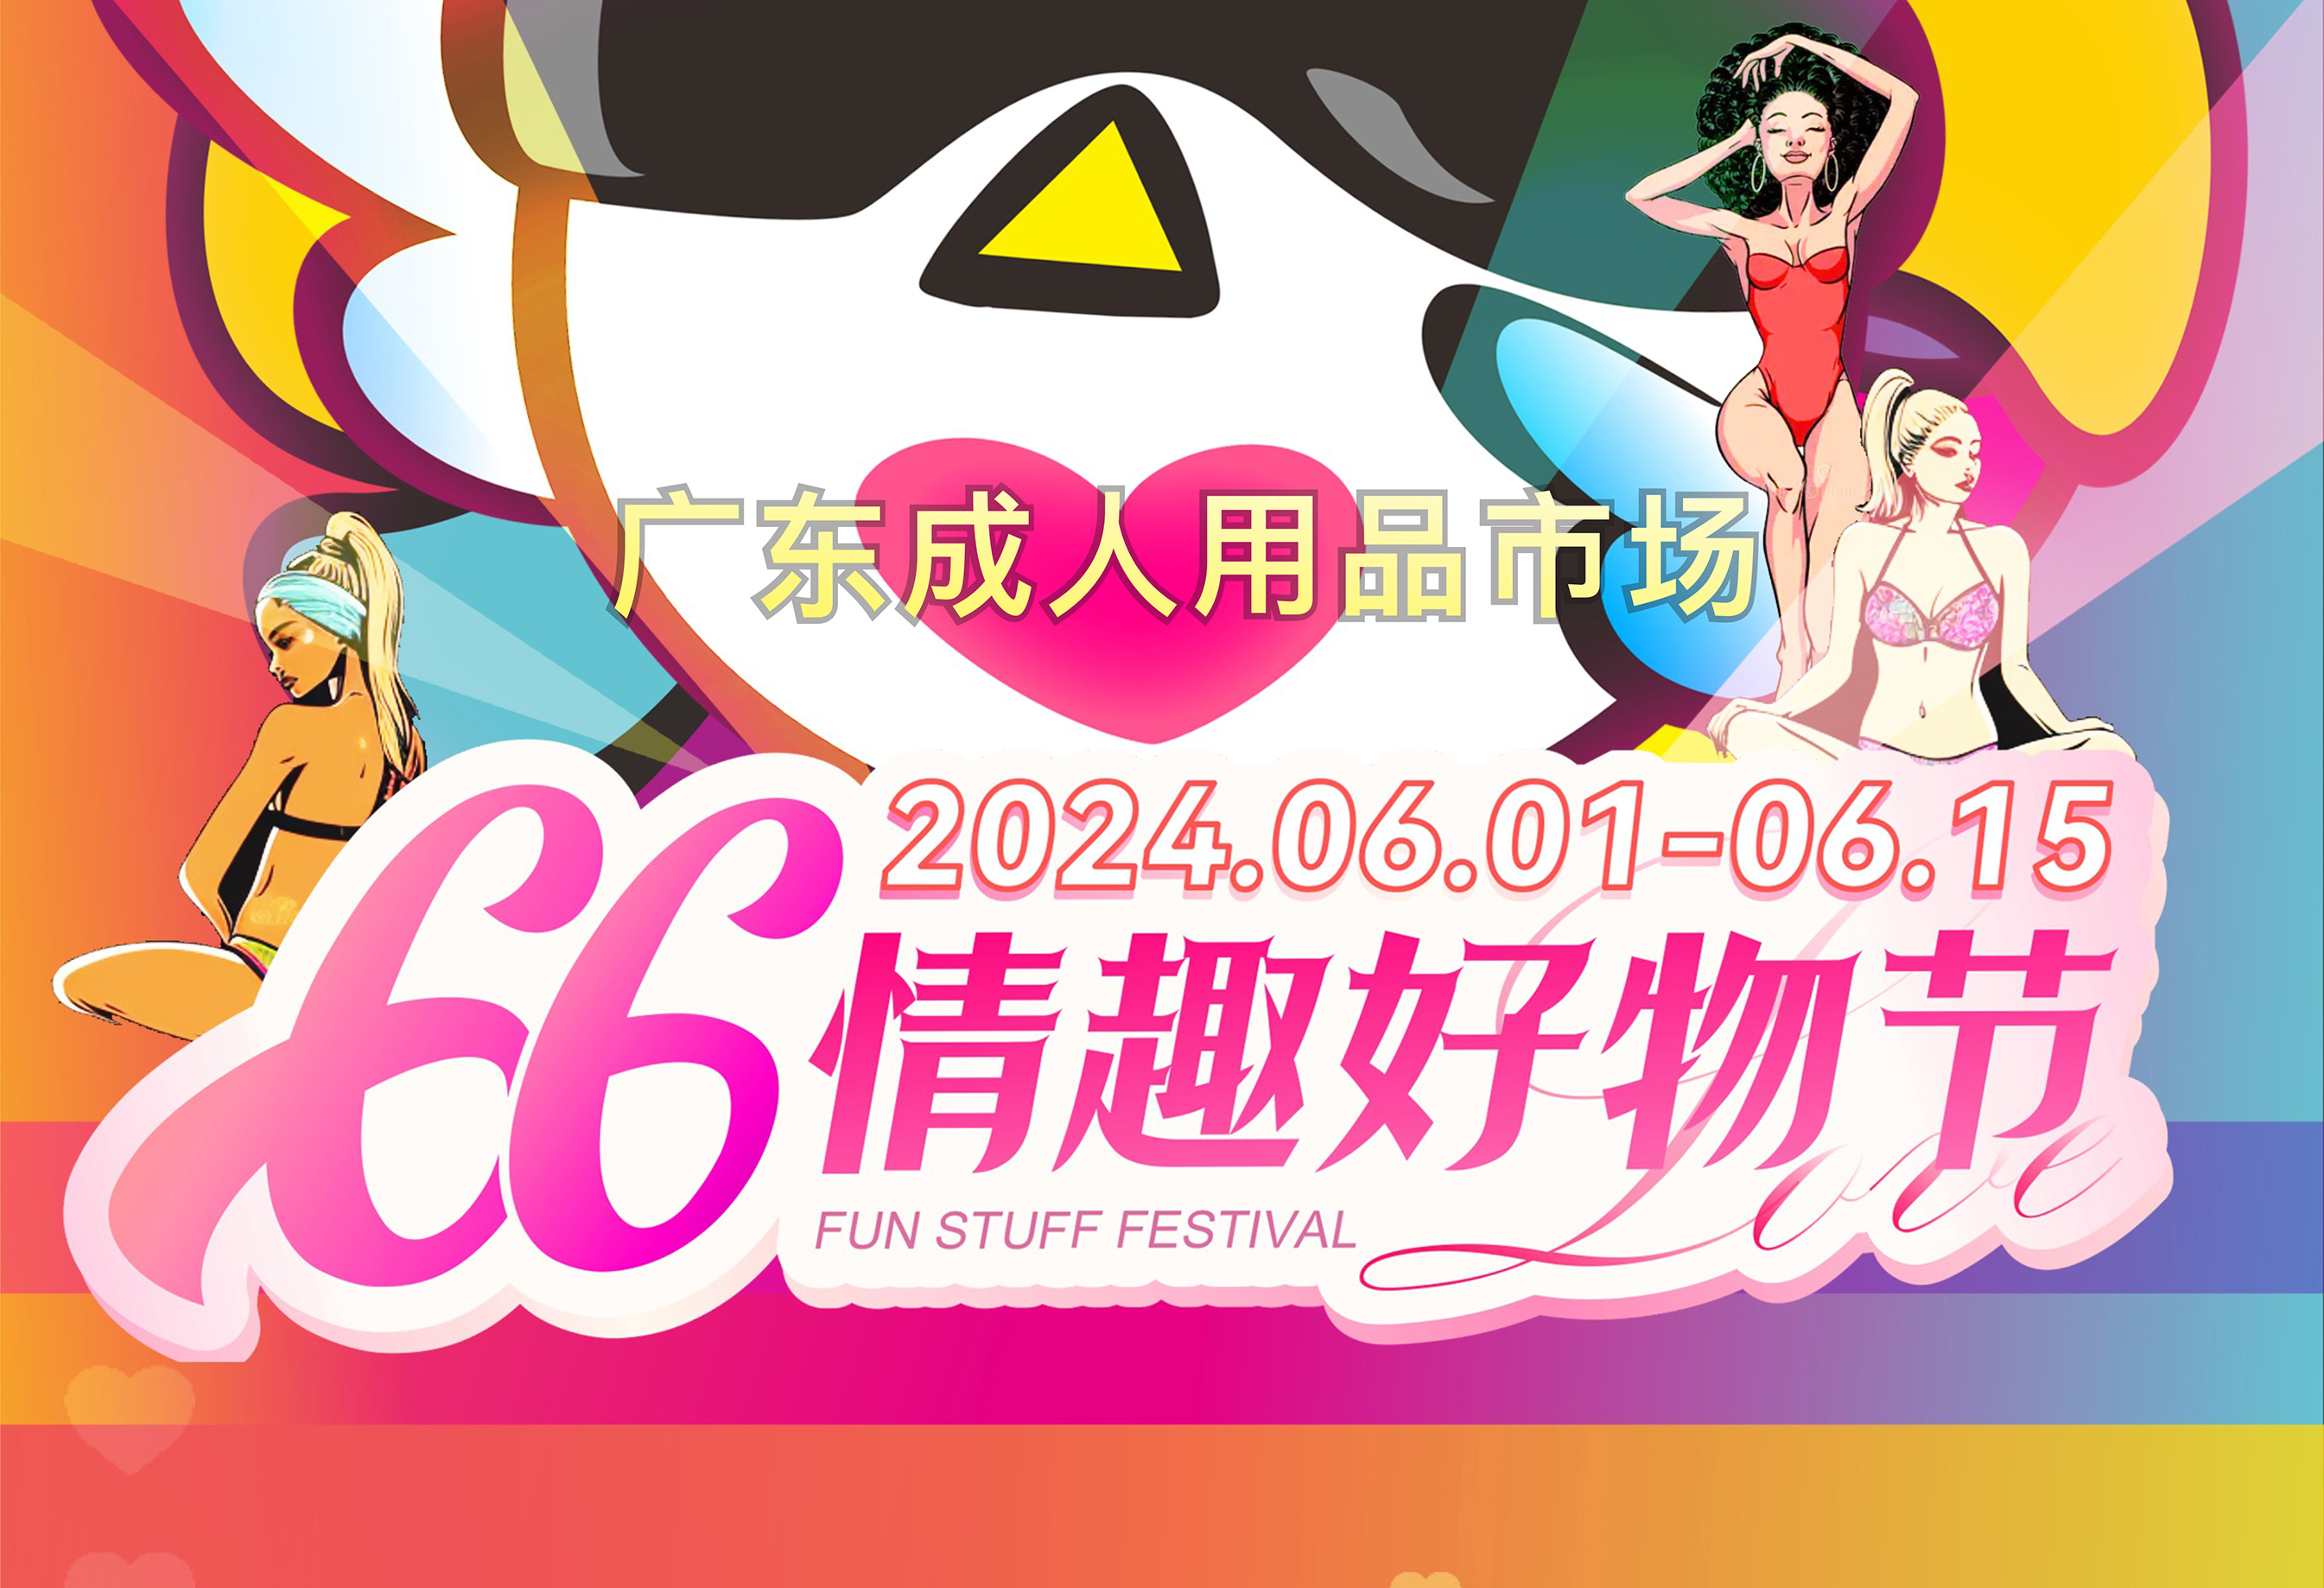 广东成人用品市场第五届“66情趣好物节”欢乐启幕